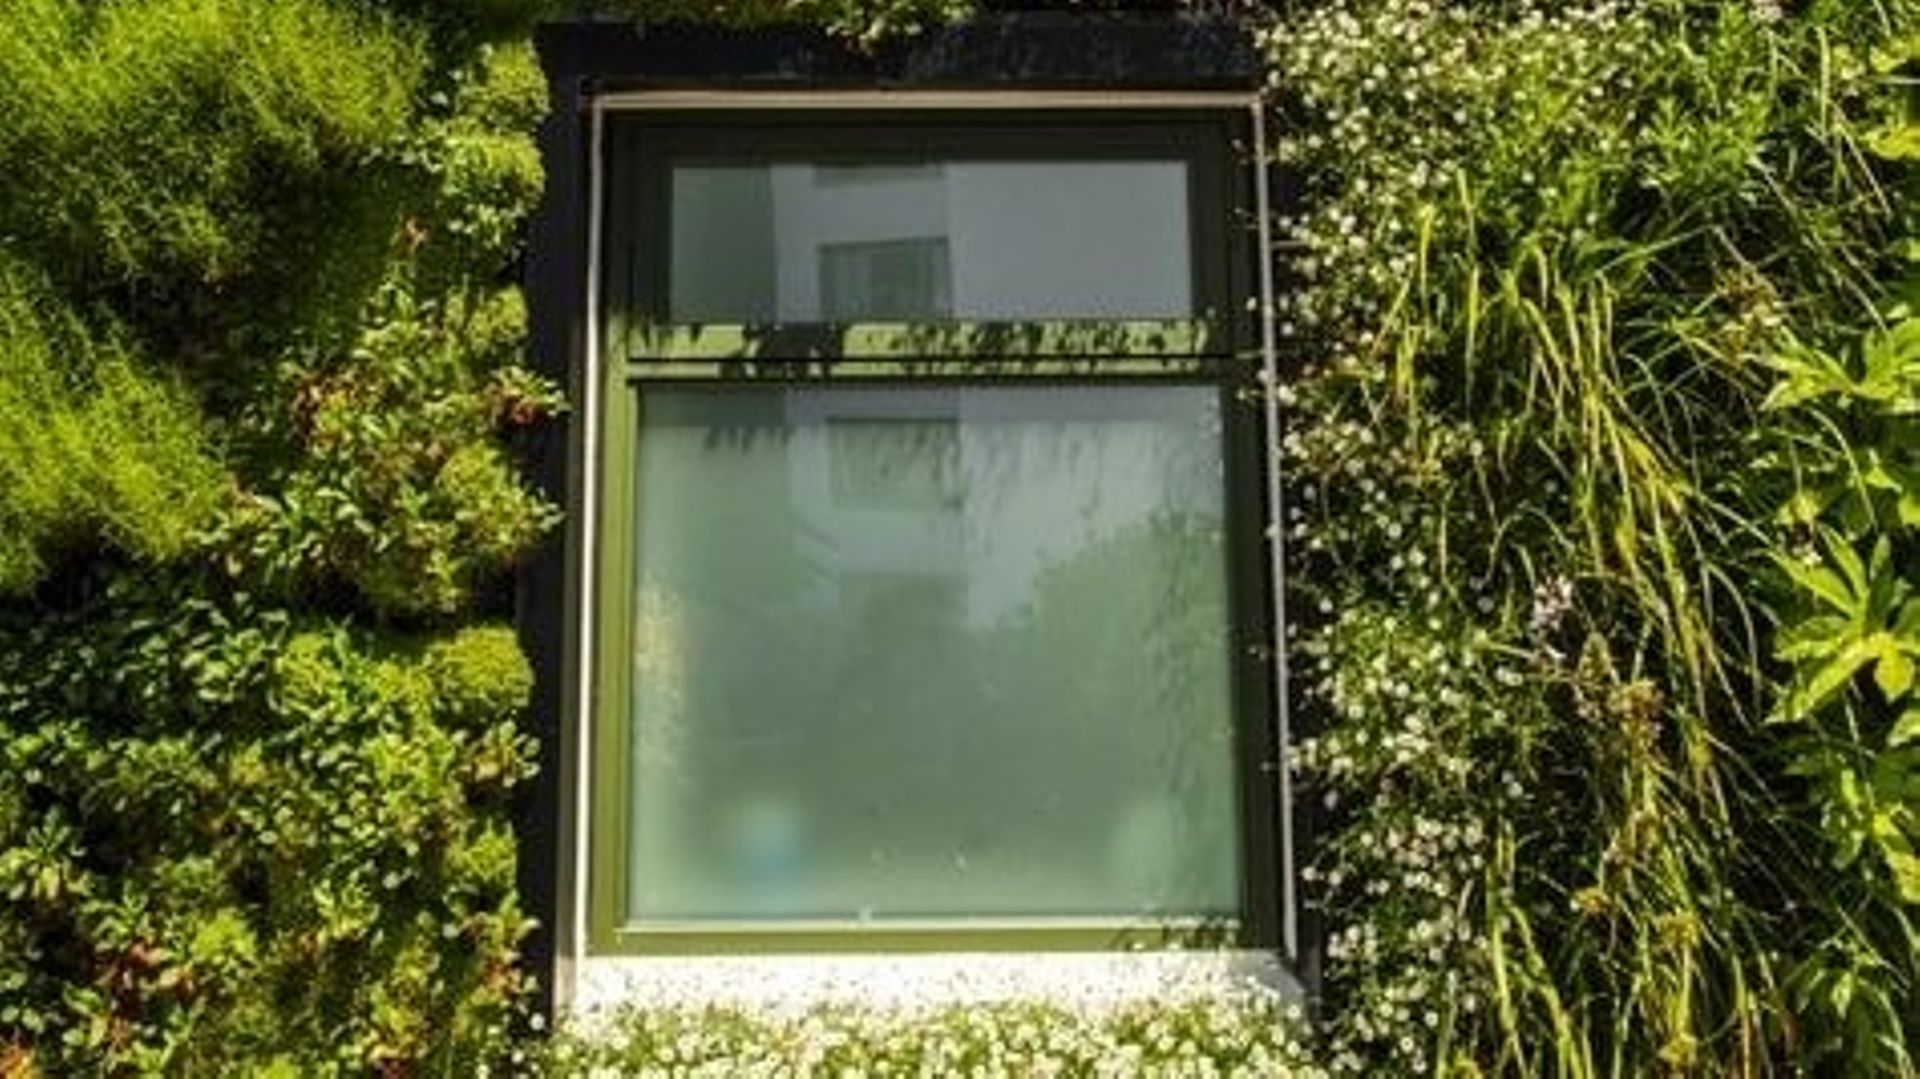  Les murs végétaux, une solution pour mieux isoler les bâtiments ? 